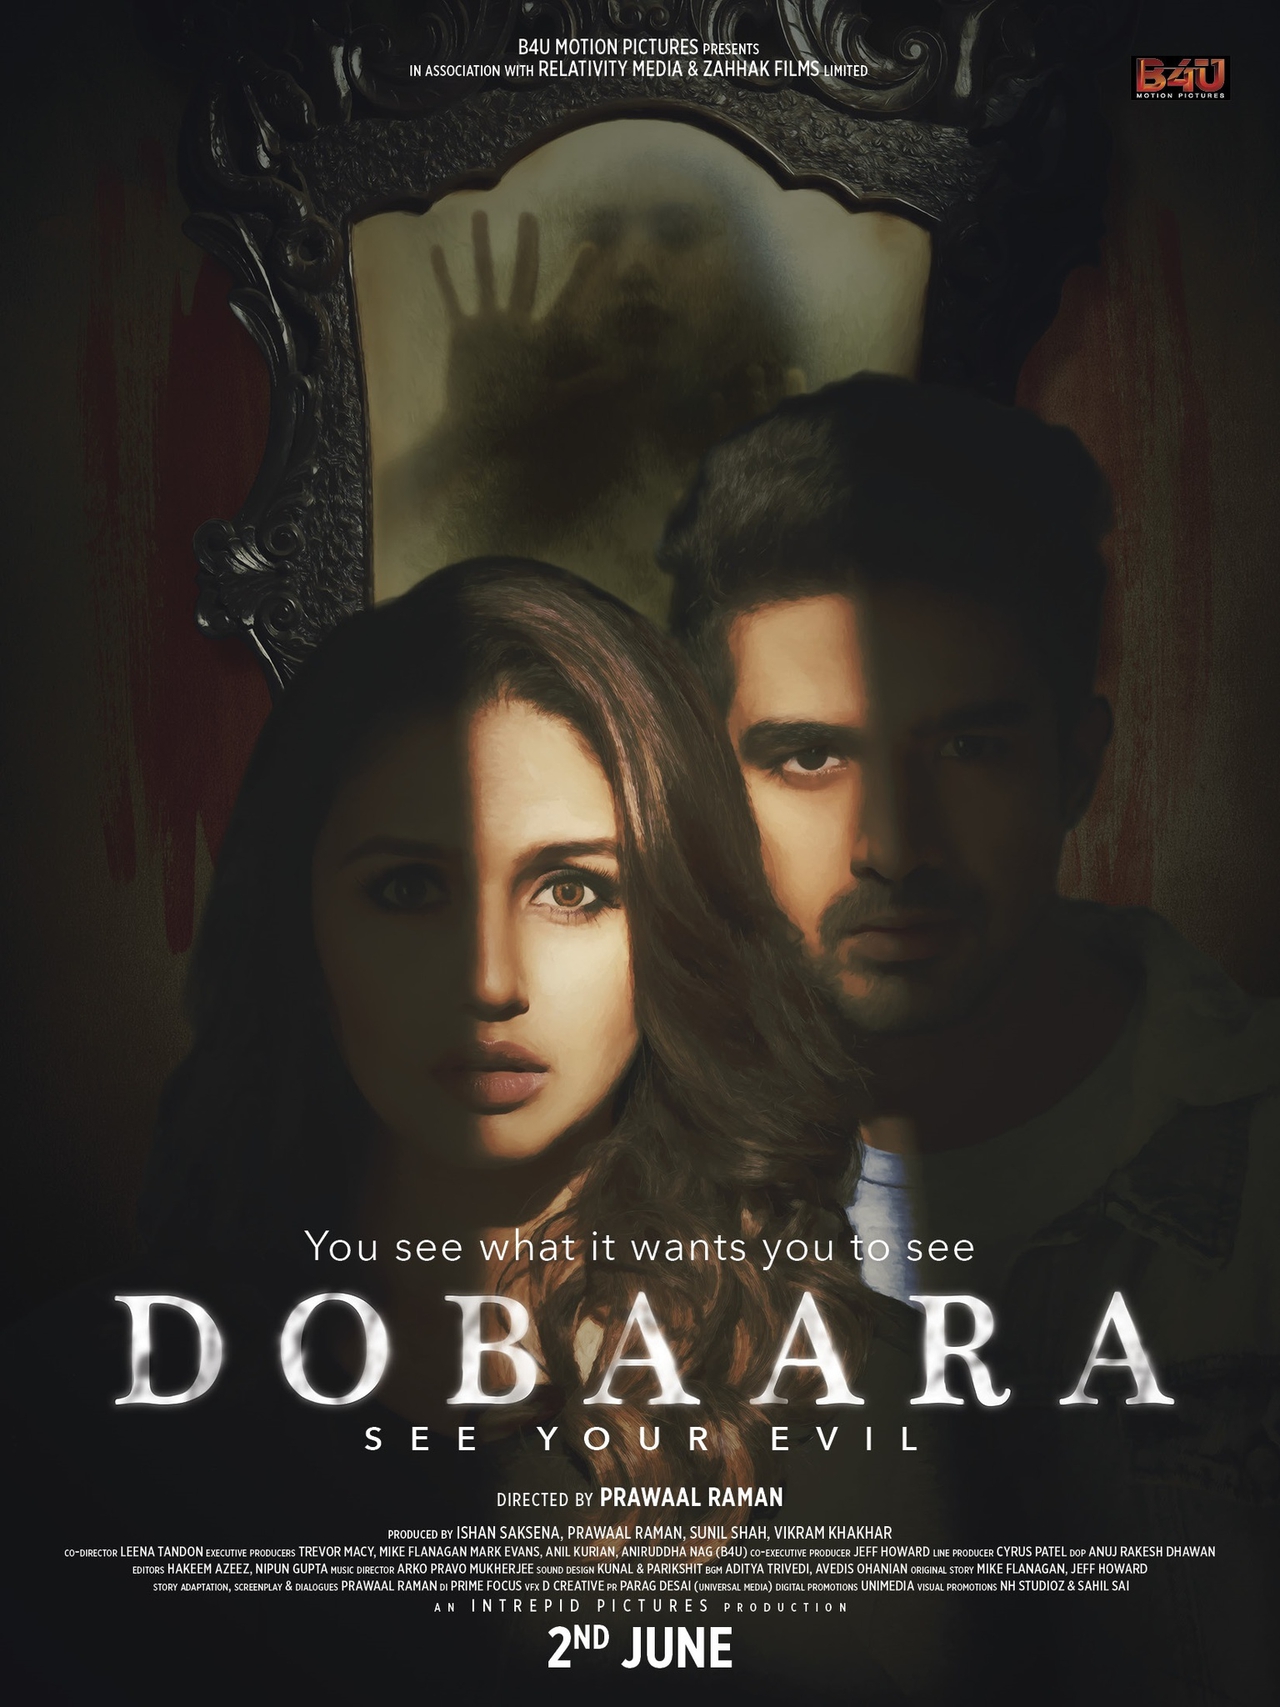  فیلم سینمایی Dobaara: See Your Evil به کارگردانی Prawaal Raman